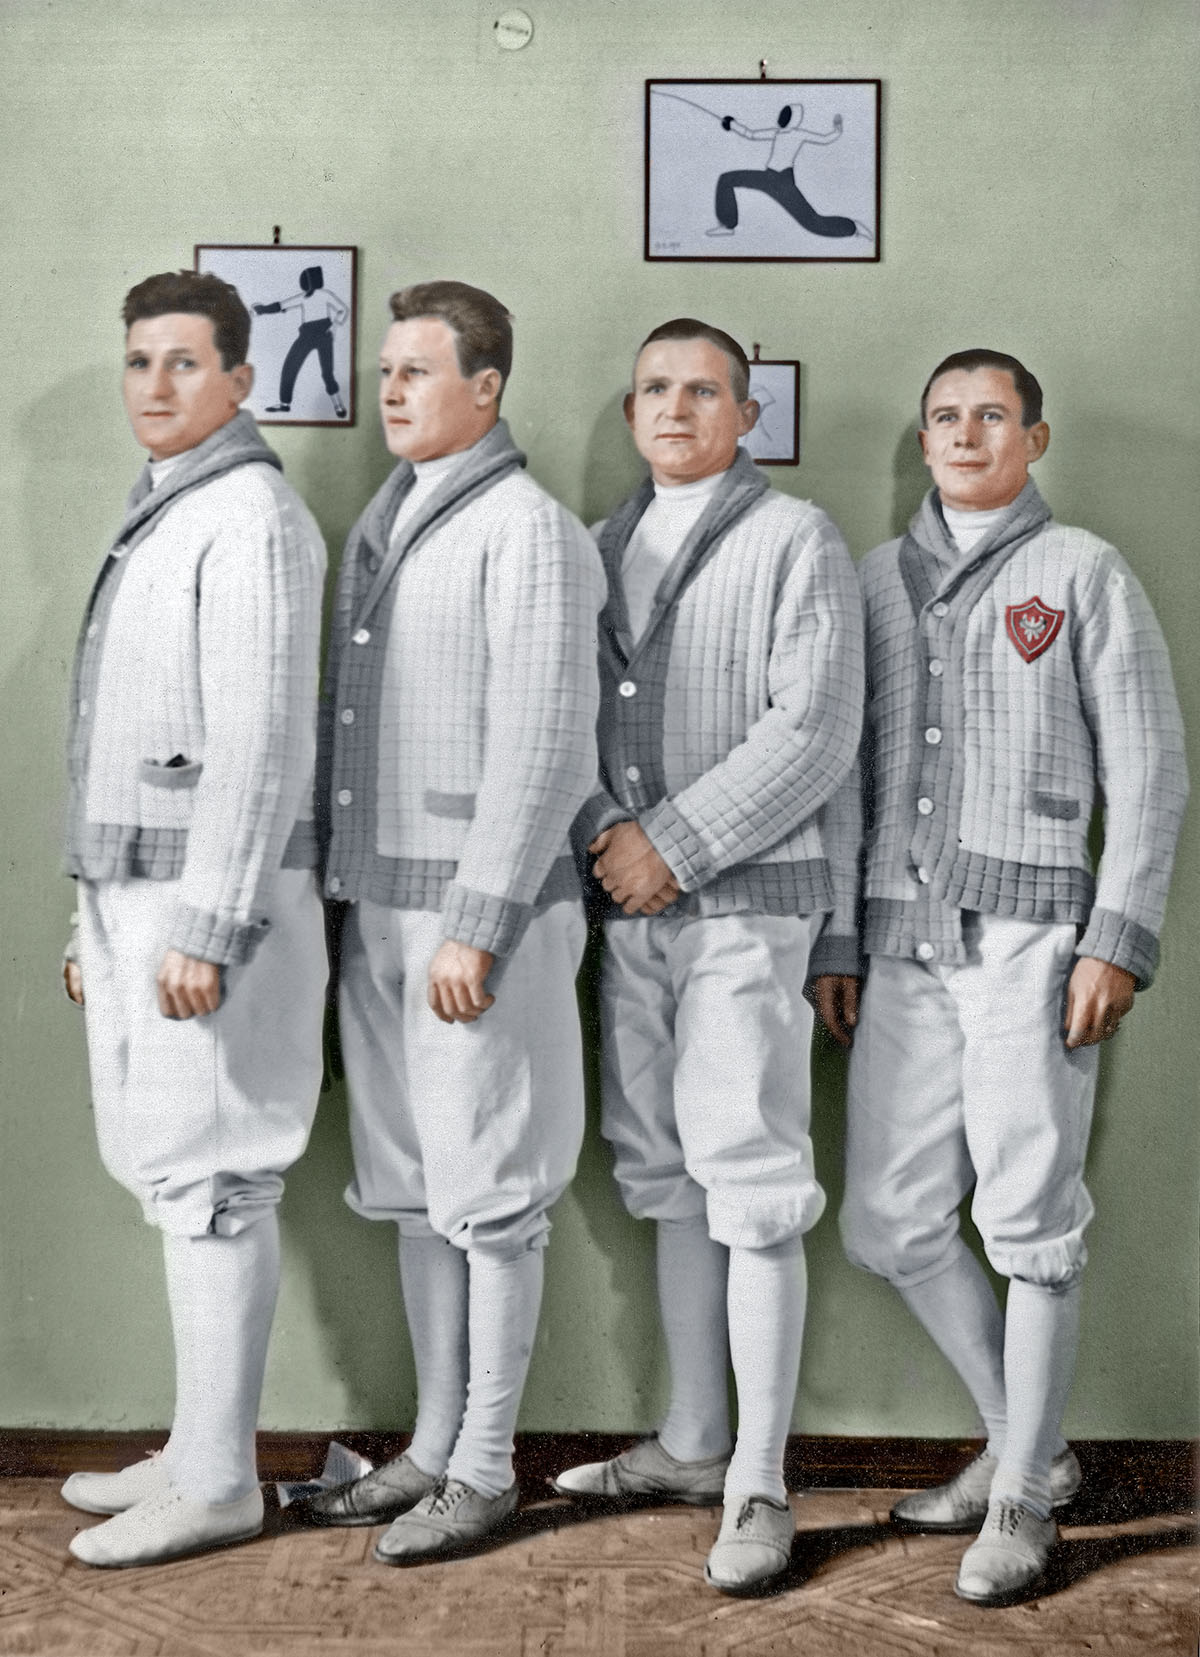 Szermierze z Policyjnego Klubu Sportowego Katowice w grudniu 1934 r. Od lewej: Antoni Sobik, Karol Paszek, Teodor Zaczyk i Antoni Kaczmarczyk. Źródło: Narodowe Archiwum Cyfrowe